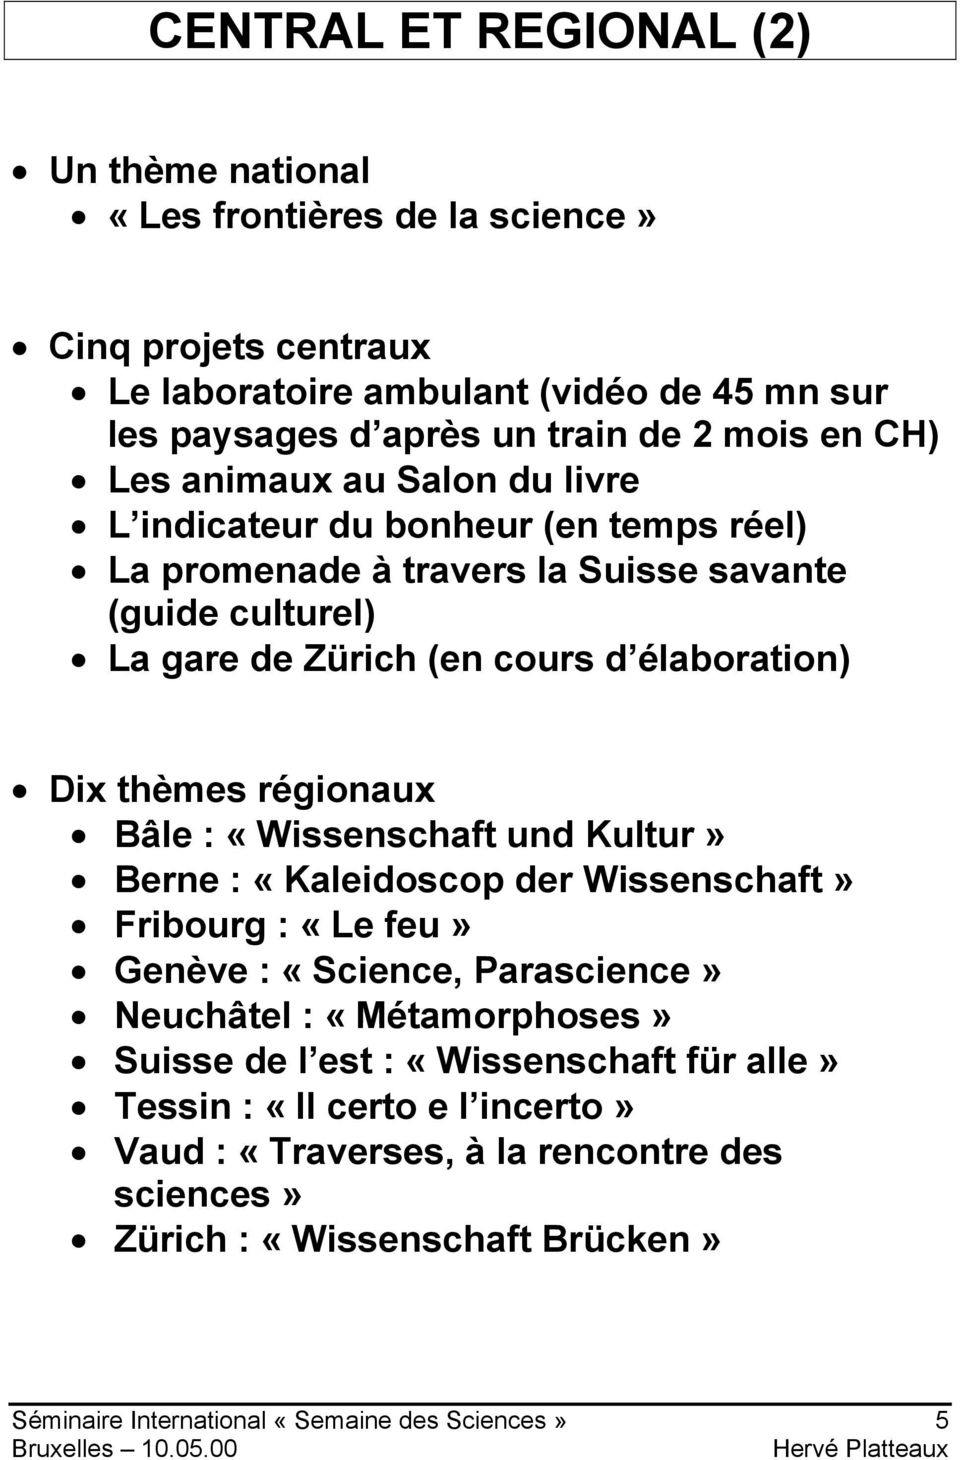 thèmes régionaux Bâle : «Wissenschaft und Kultur» Berne : «Kaleidoscop der Wissenschaft» Fribourg : «Le feu» Genève : «Science, Parascience» Neuchâtel : «Métamorphoses» Suisse de l